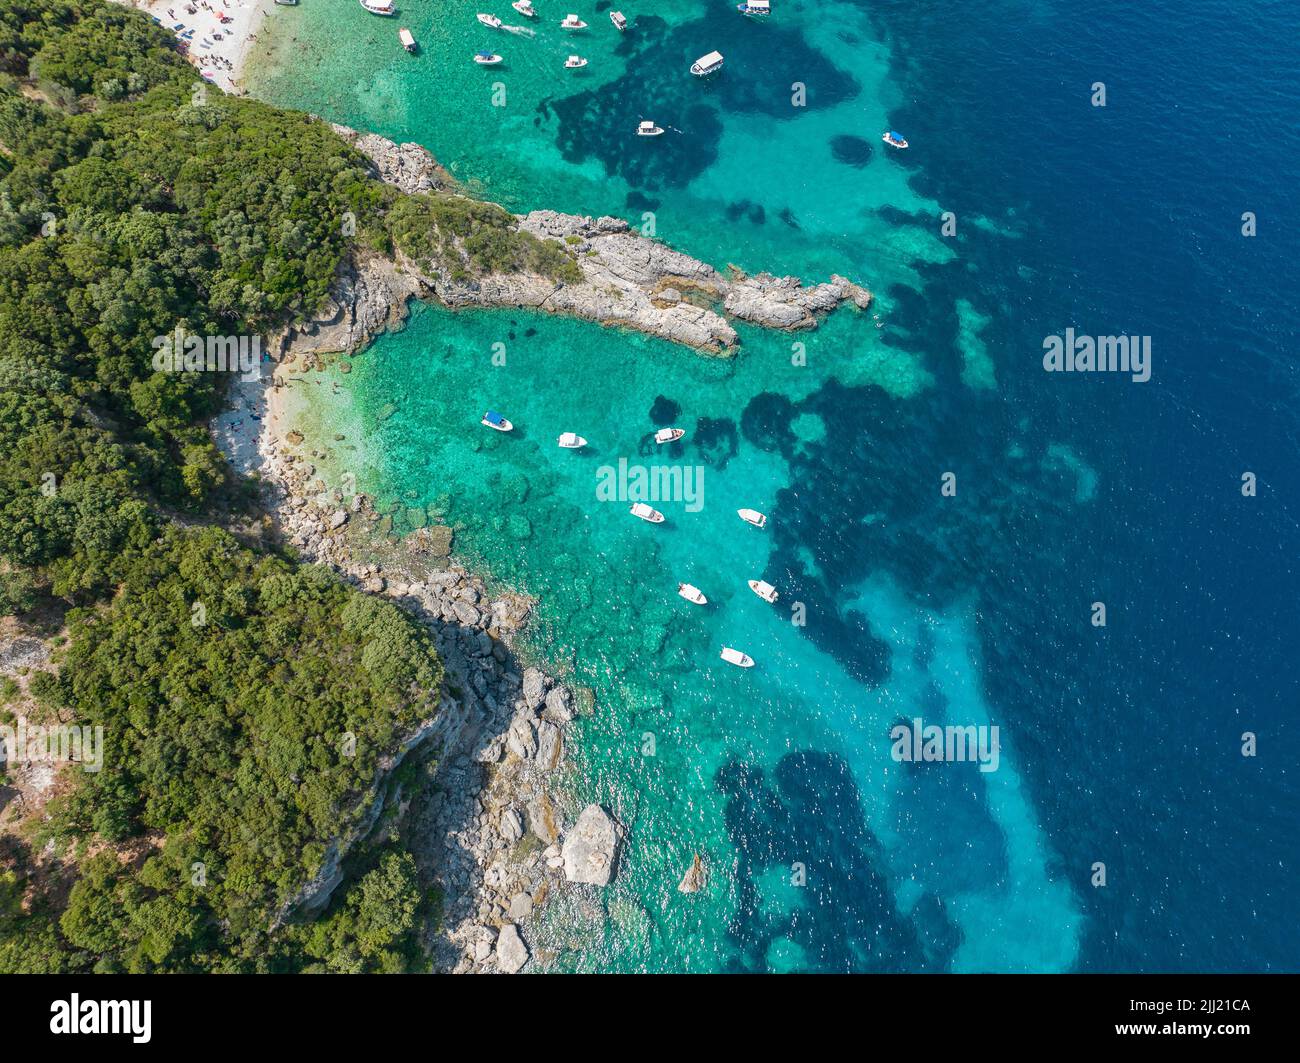 Vista aérea de la playa de Klimatia, cerca de la playa de Limni en la isla de Corfú. Línea costera. Aguas transparentes y cristalinas, barcos amarrados. Grecia Foto de stock